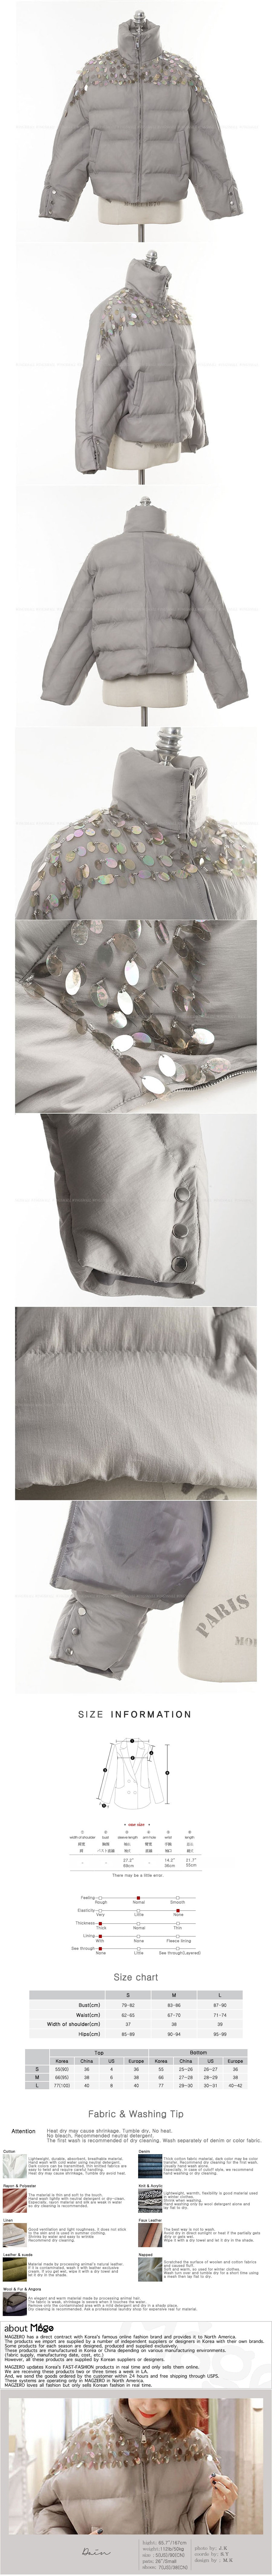 韩国正品 MAGZERO 短款带亮片羽绒夹克上衣 #灰色 均码(S-M) [免费配送]